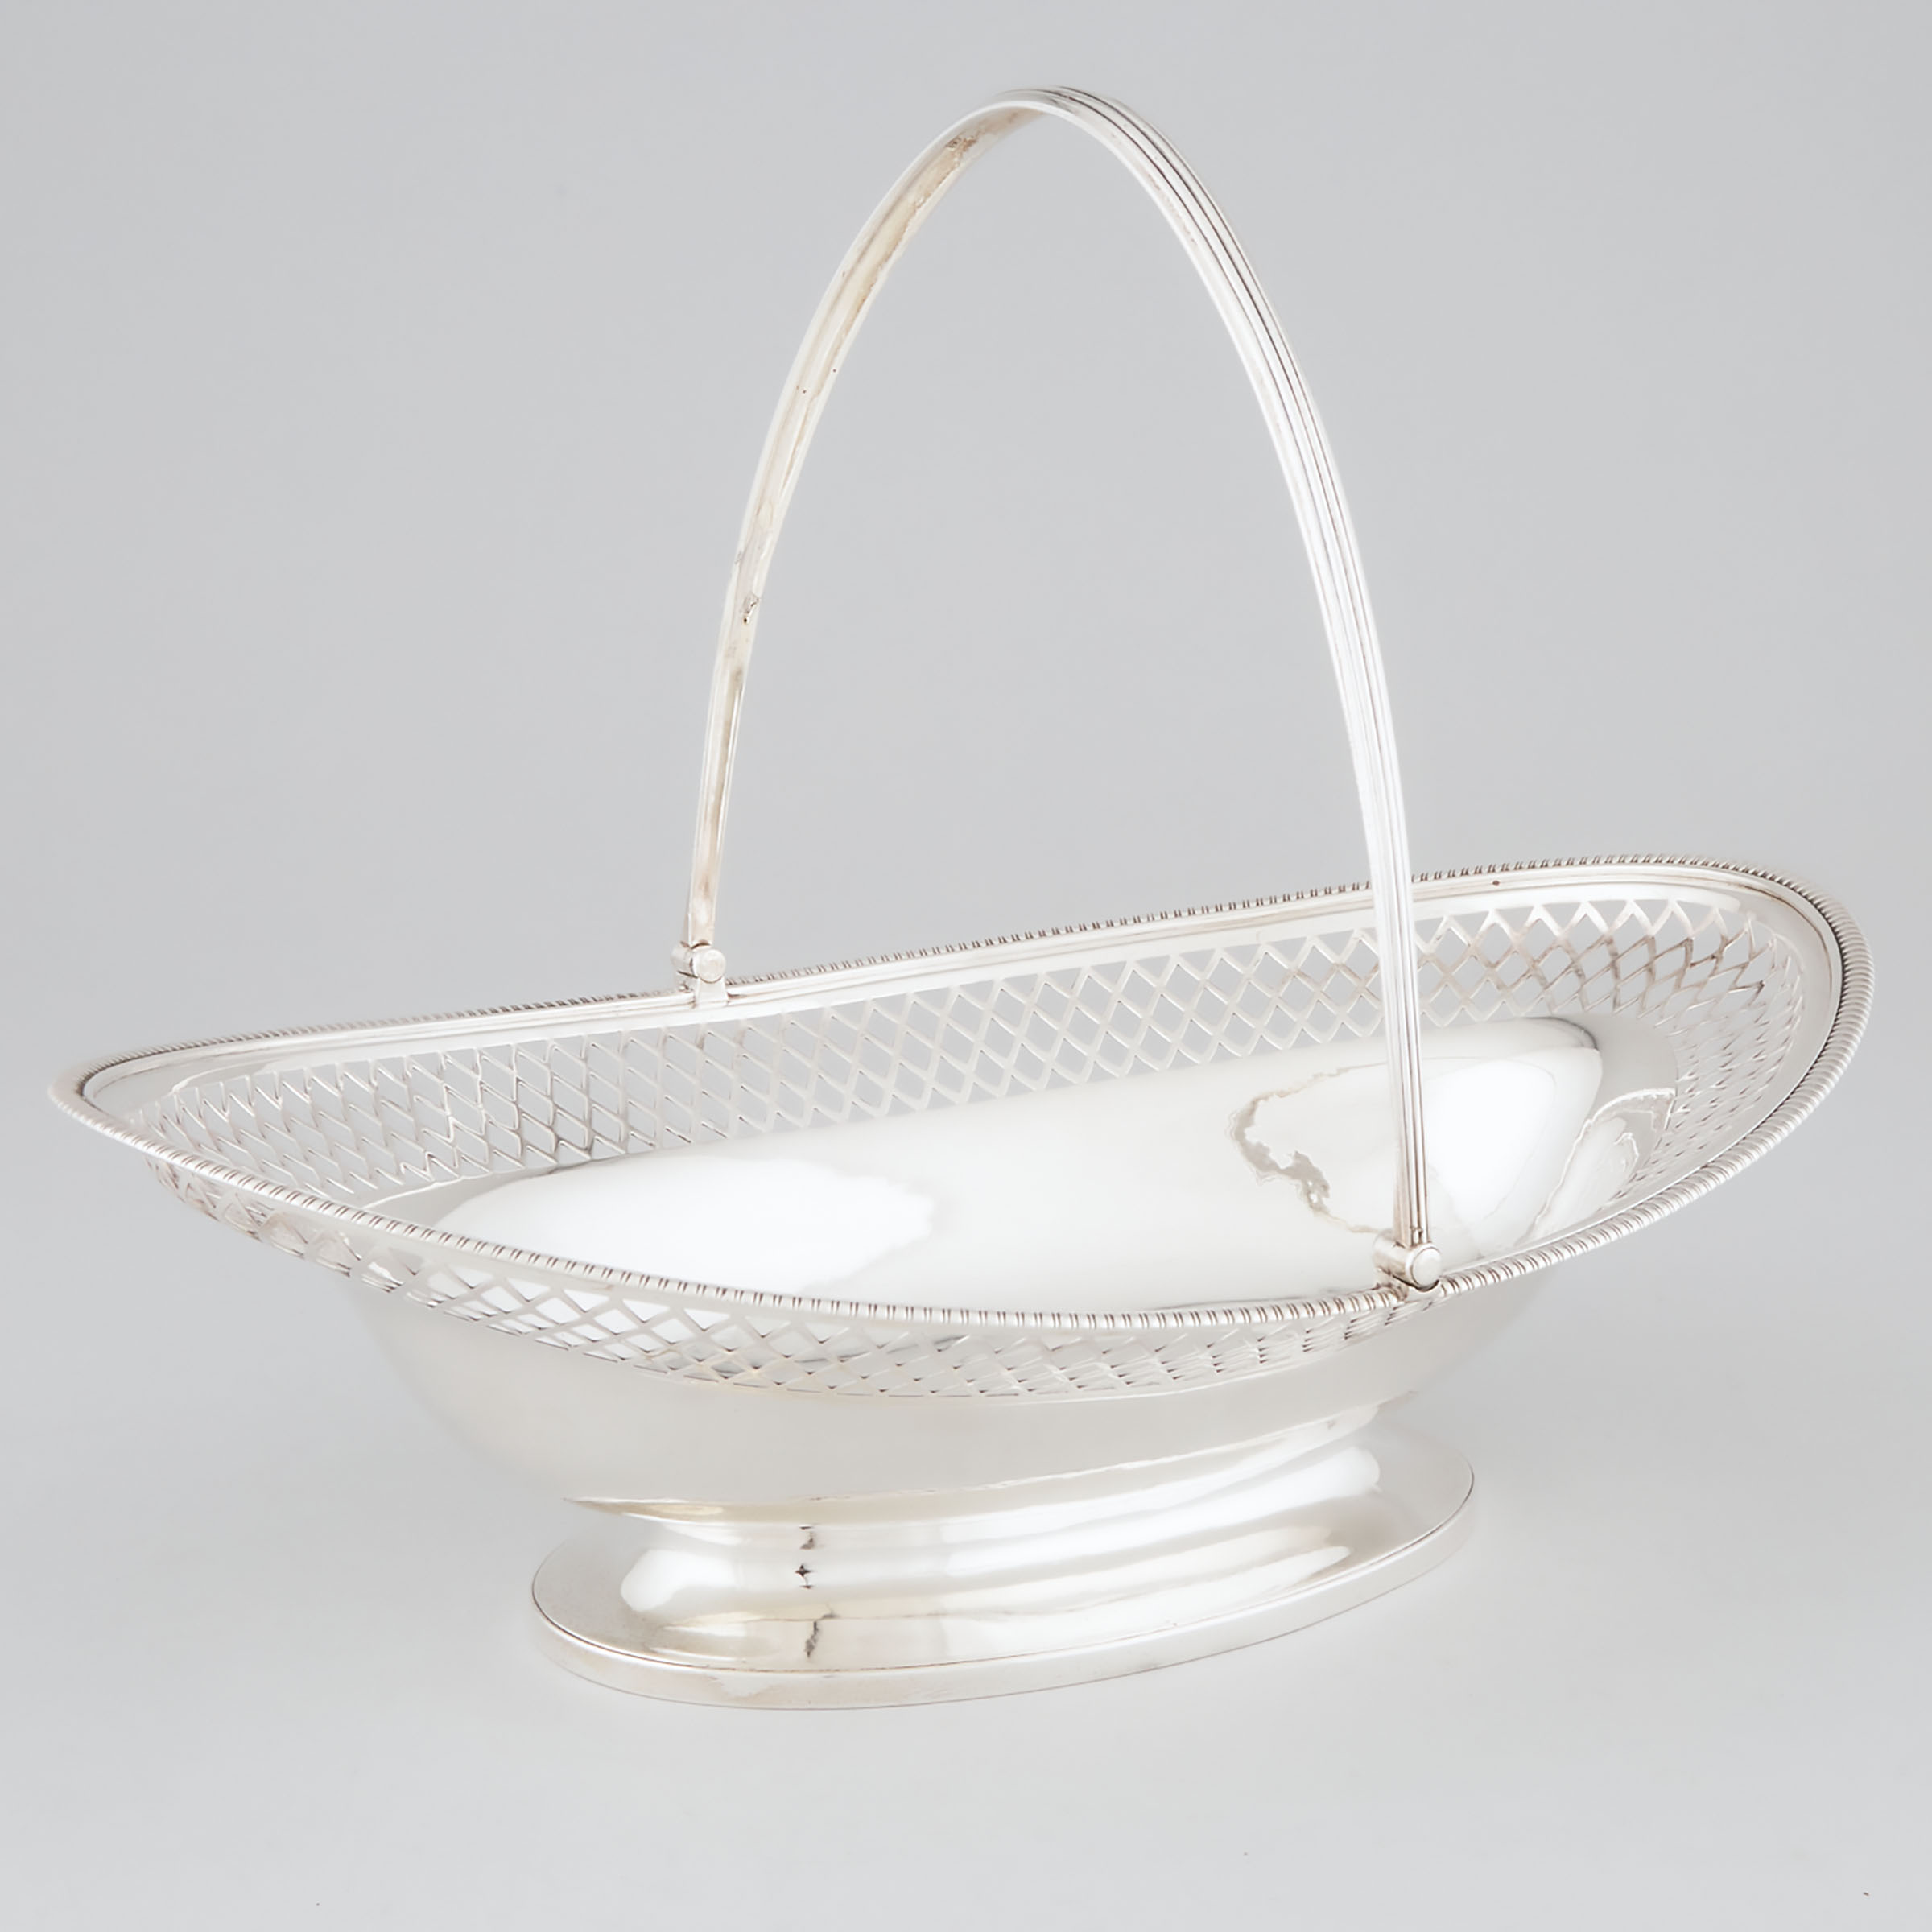 George III Silver Pierced Oval Cake Basket, Paul Storr, London, 1800